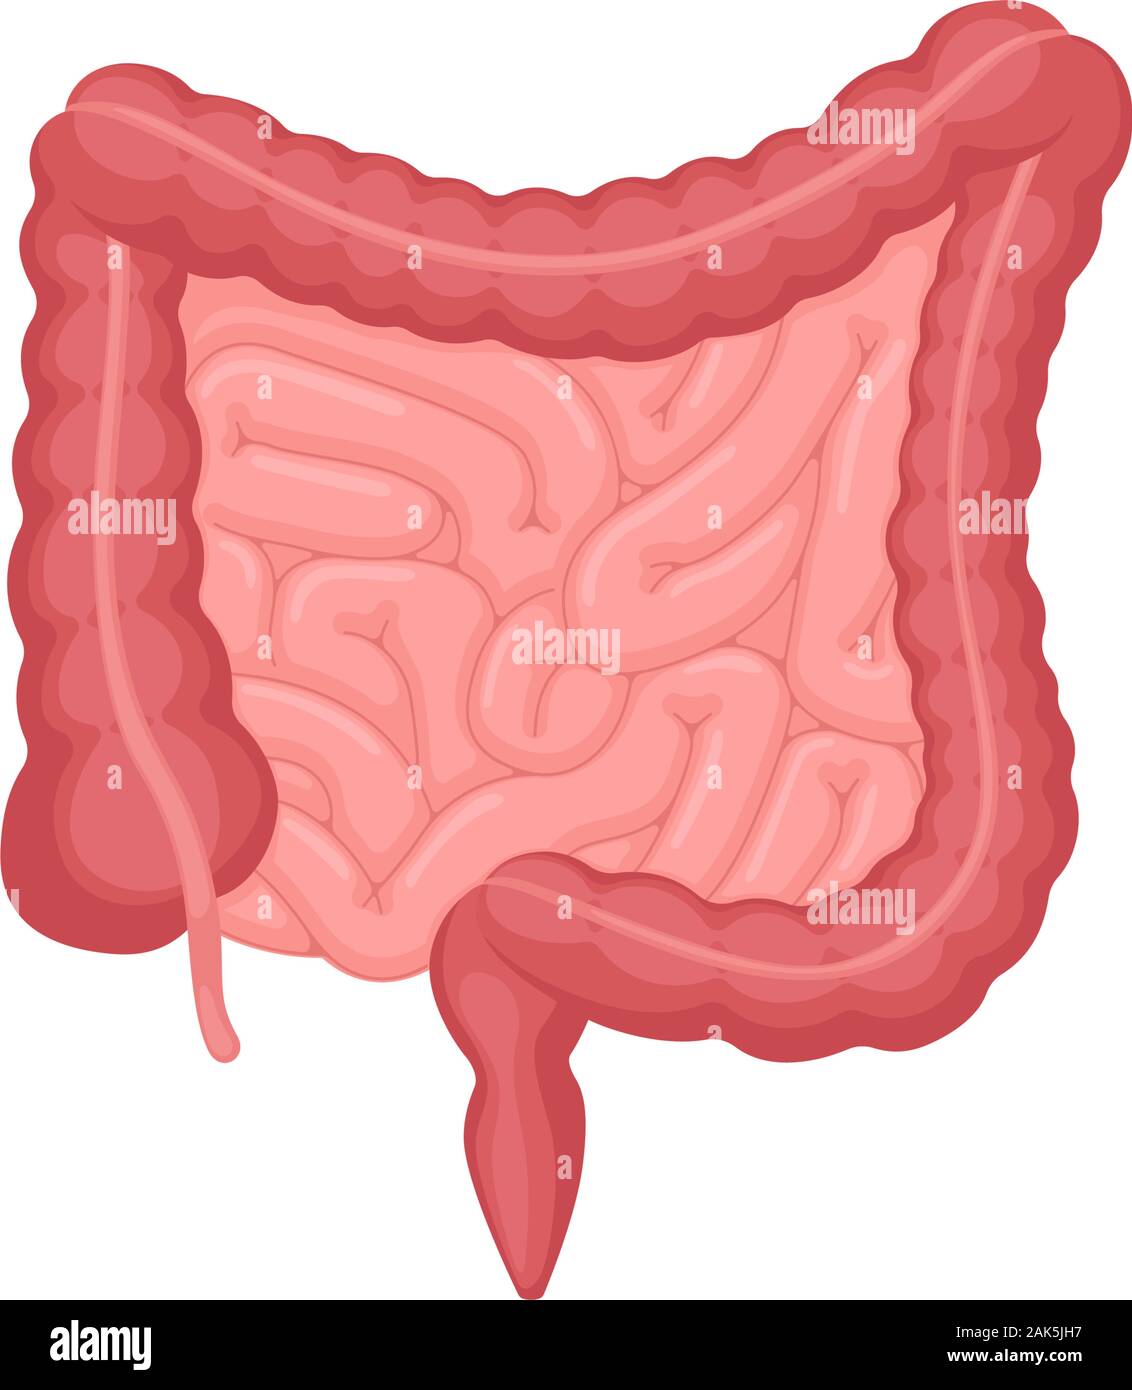 Anatomia dell'intestino umano . Cavità addominale organo interno digestivo ed escrezione. Intestino tenue e del colon con il retto duodeno e l'illustrazione della digestione vettoriale dell'appendice Illustrazione Vettoriale